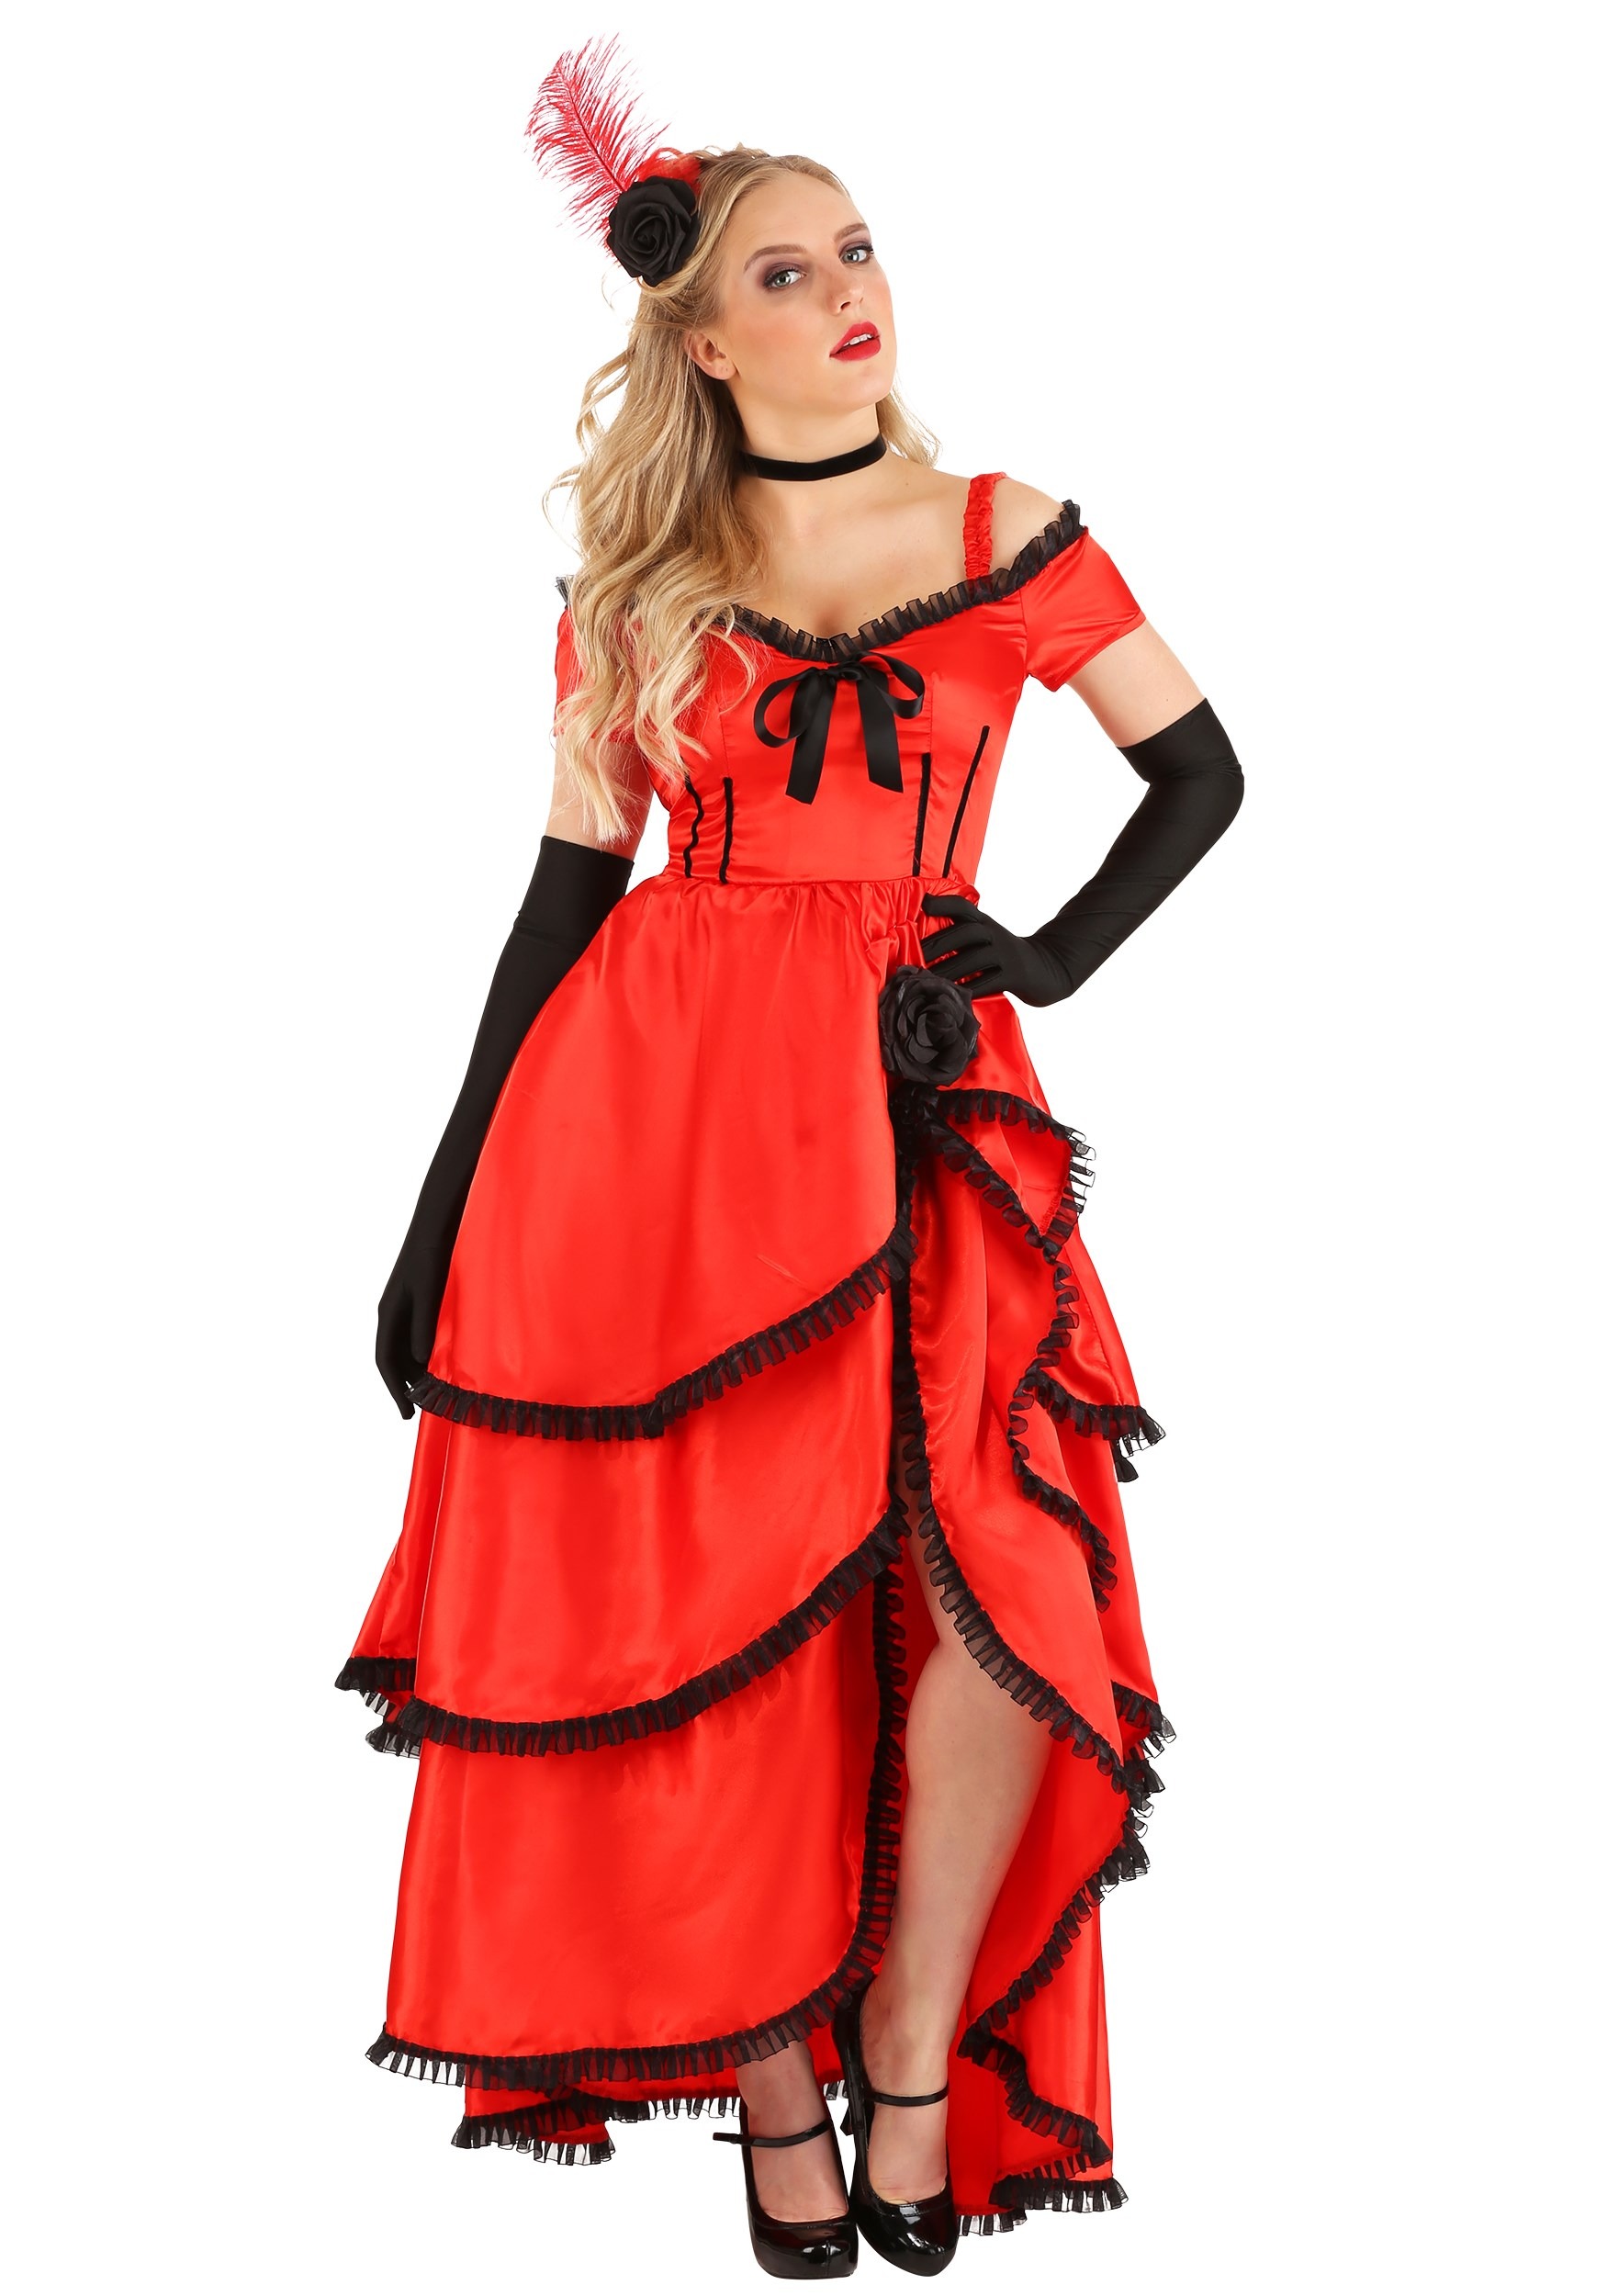 Women's Sassy Showgirl Costume Dress